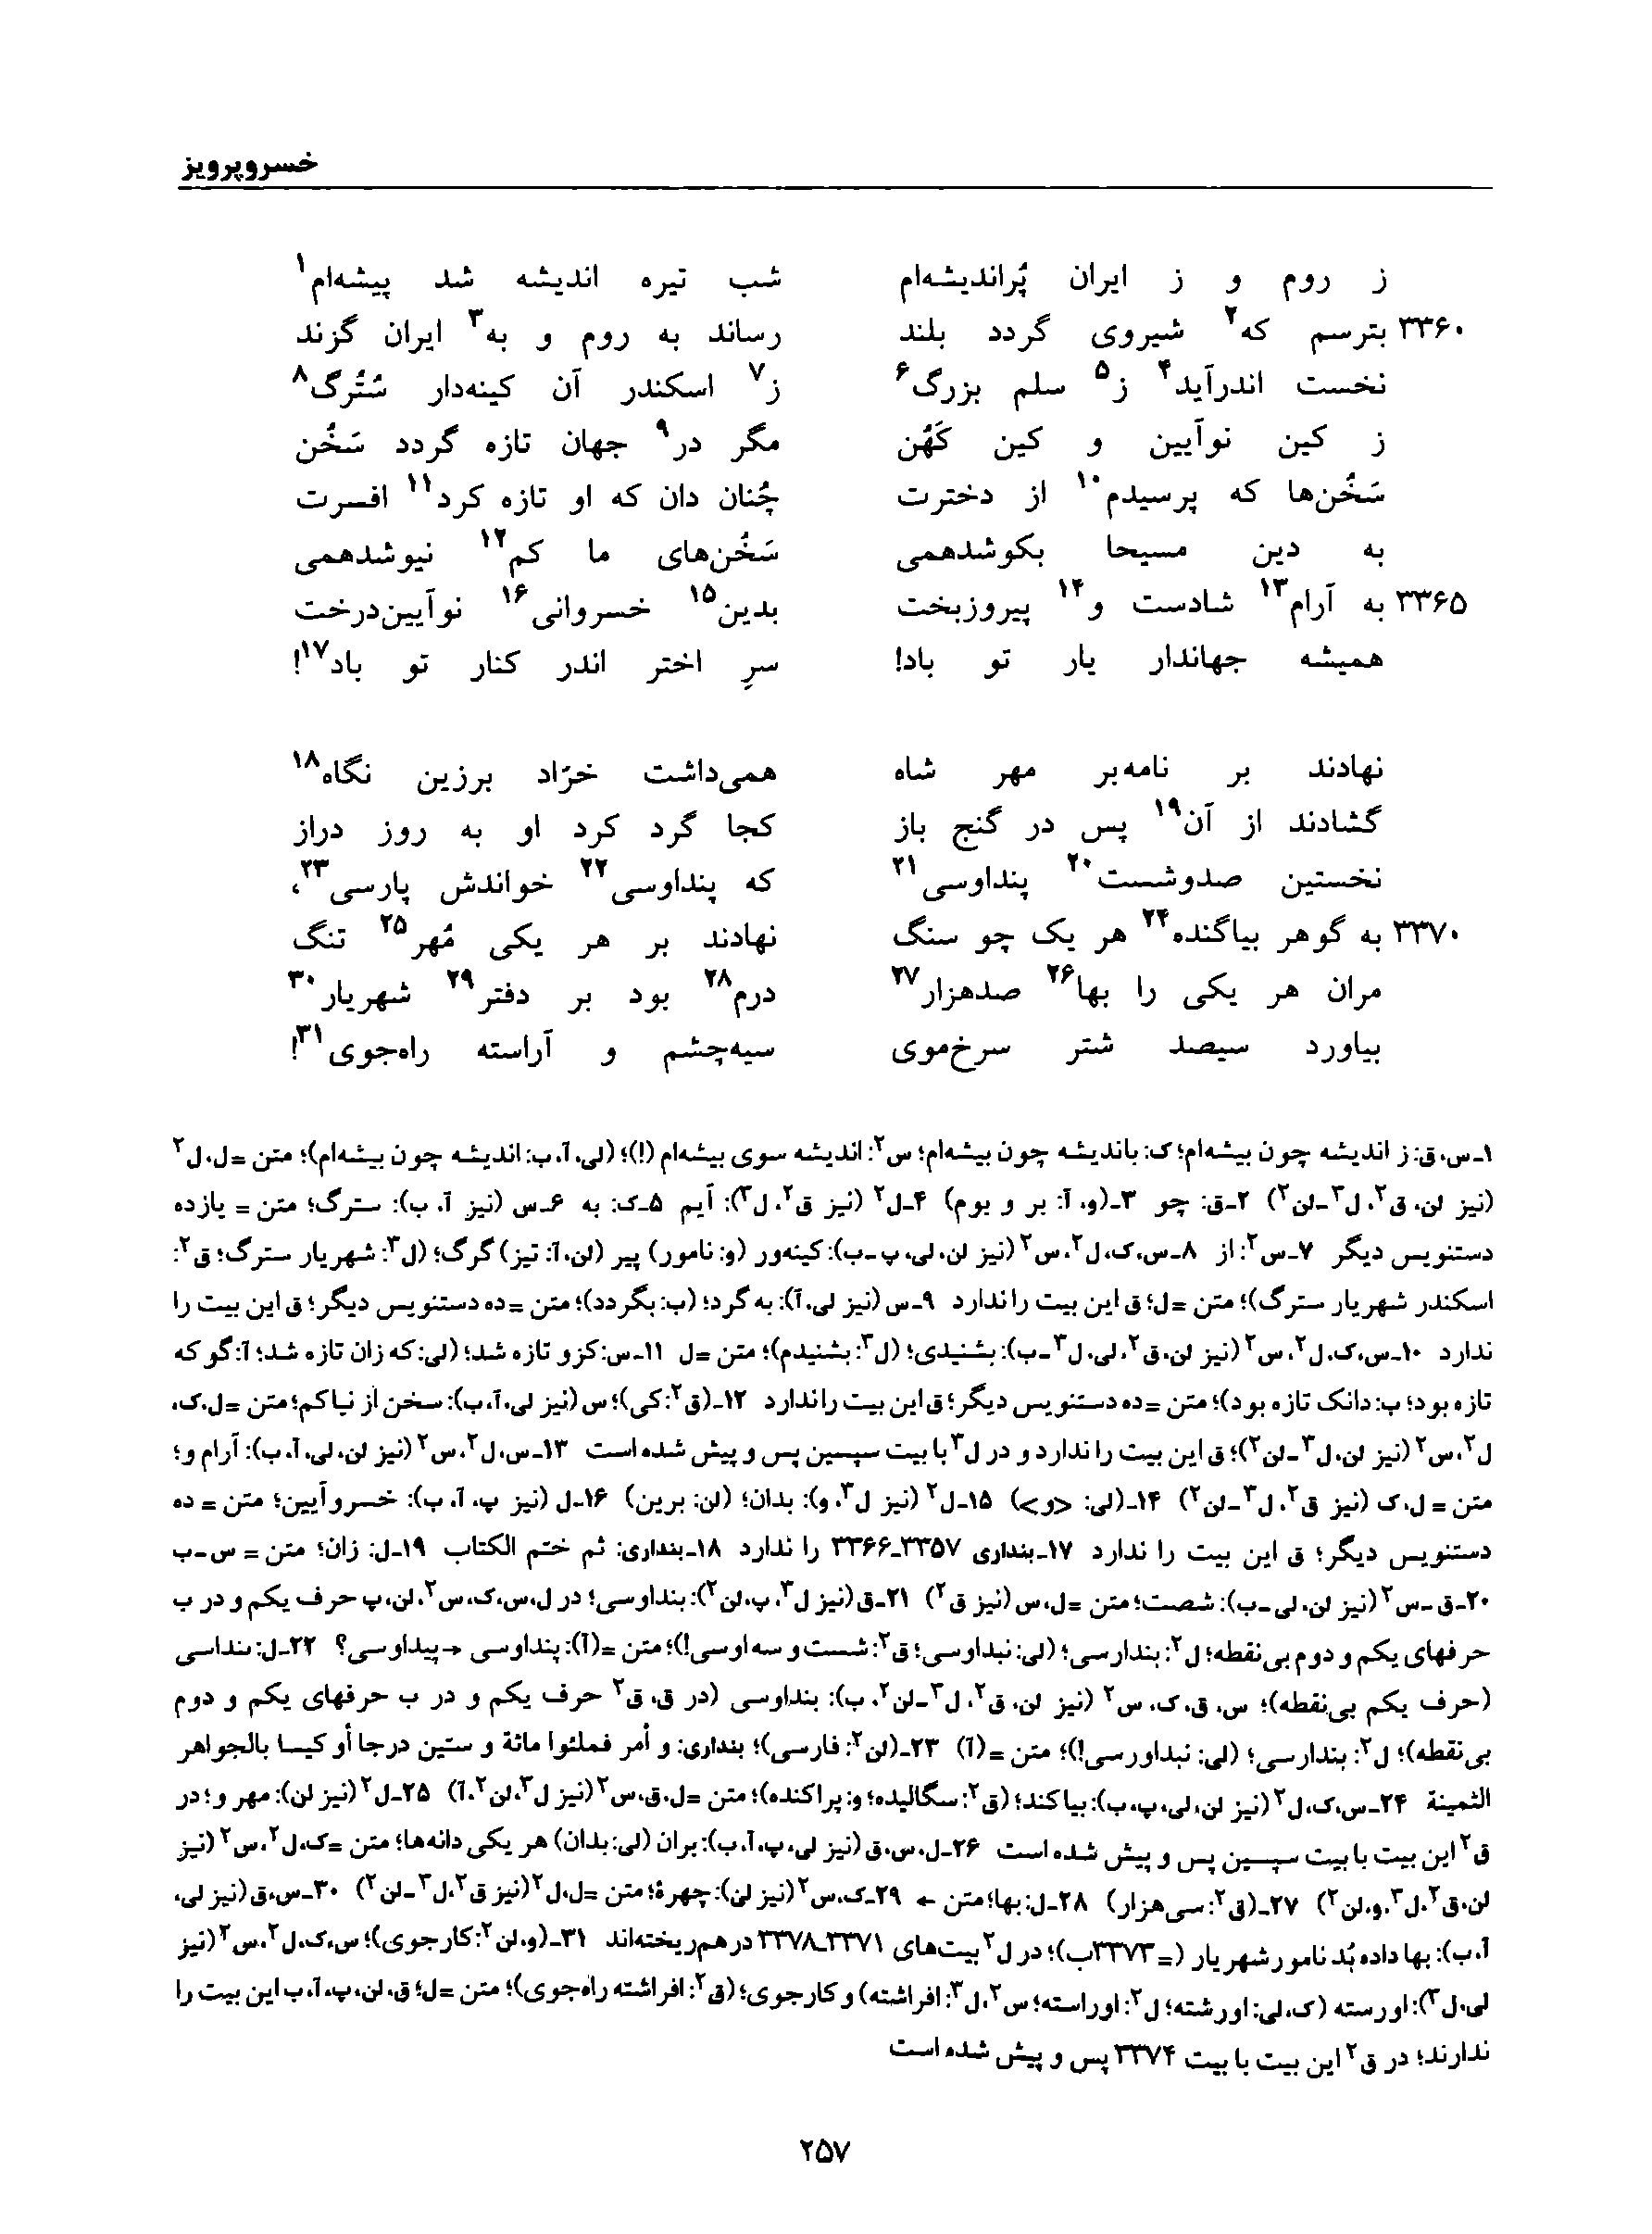 vol. 8, p. 257